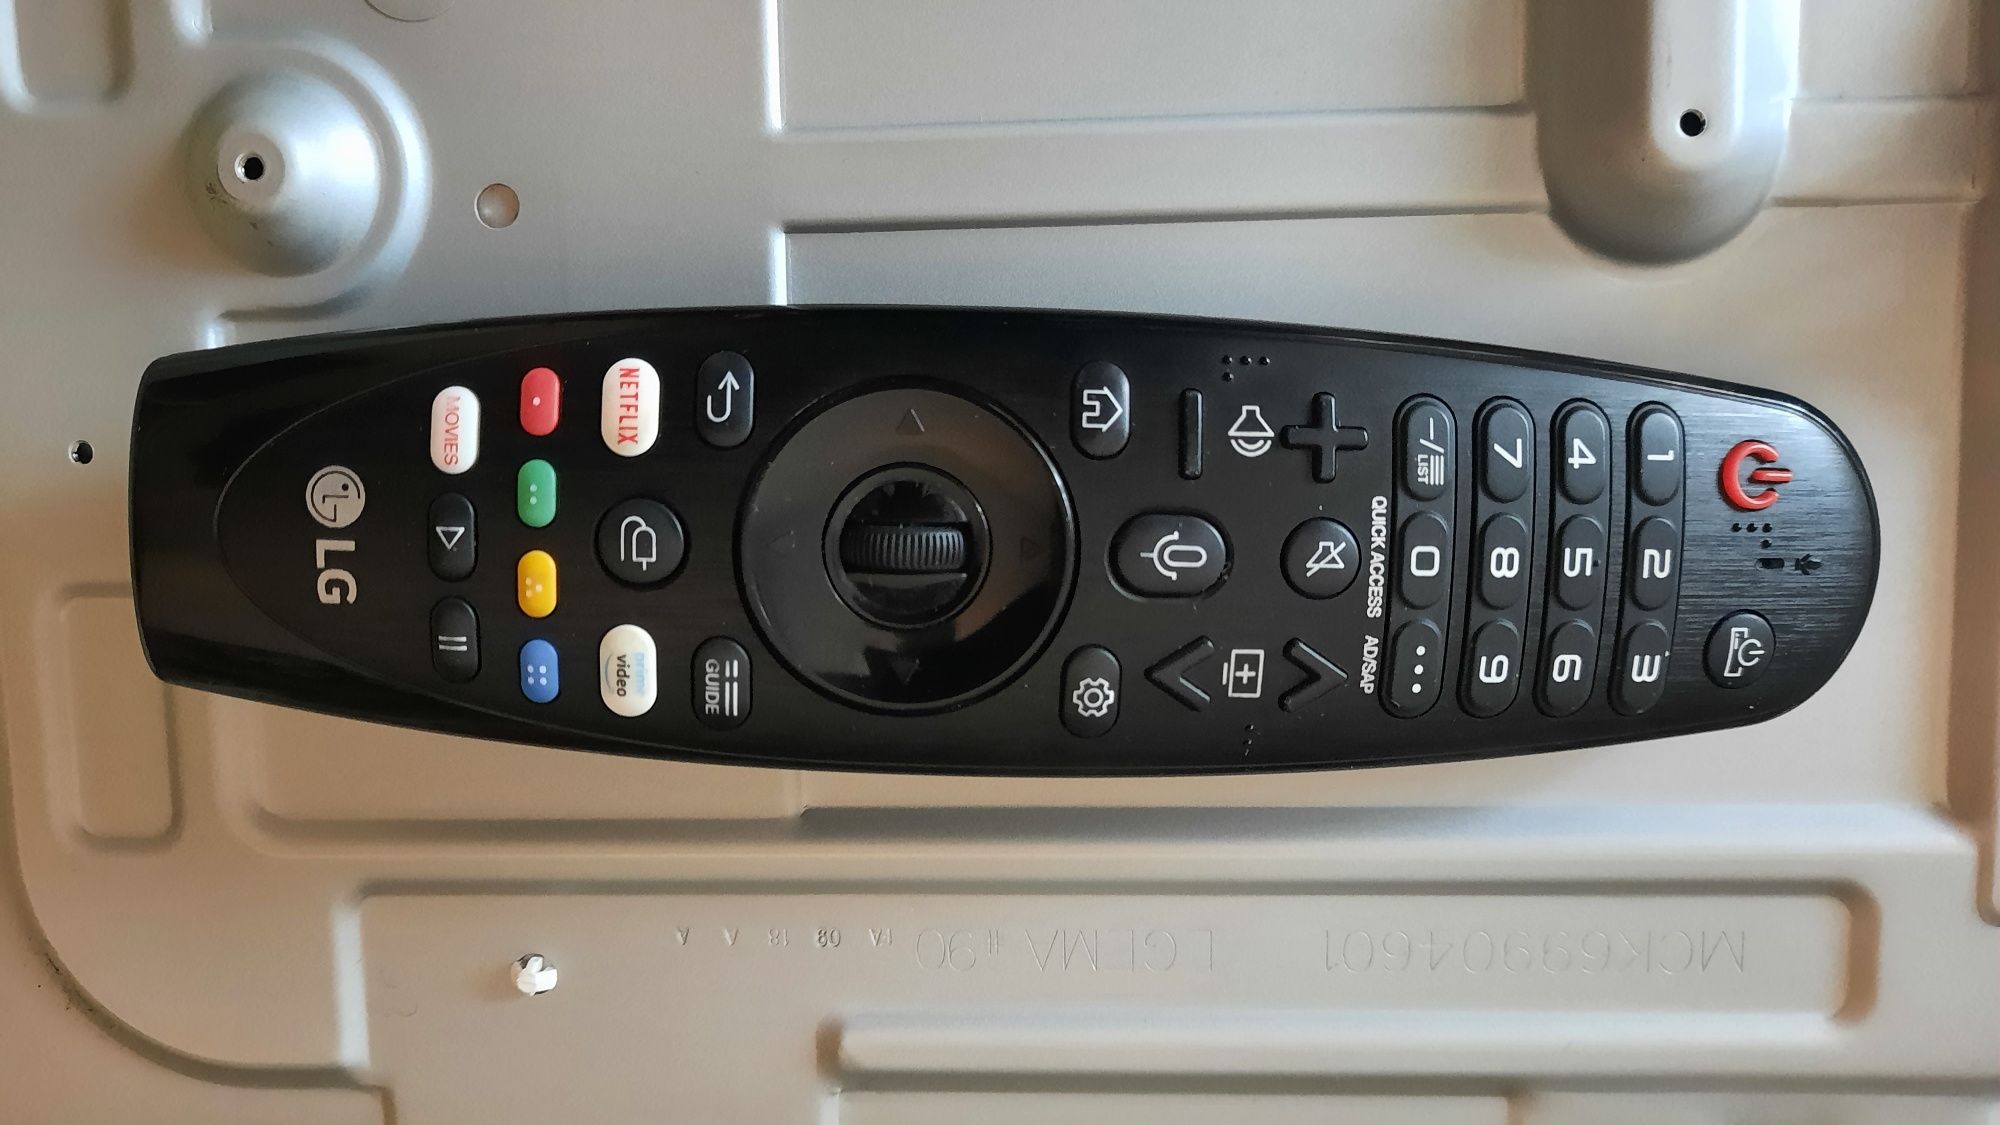 Dezmembrez tv led Smart UHD LG 43UM7500PLA cu ecran spart